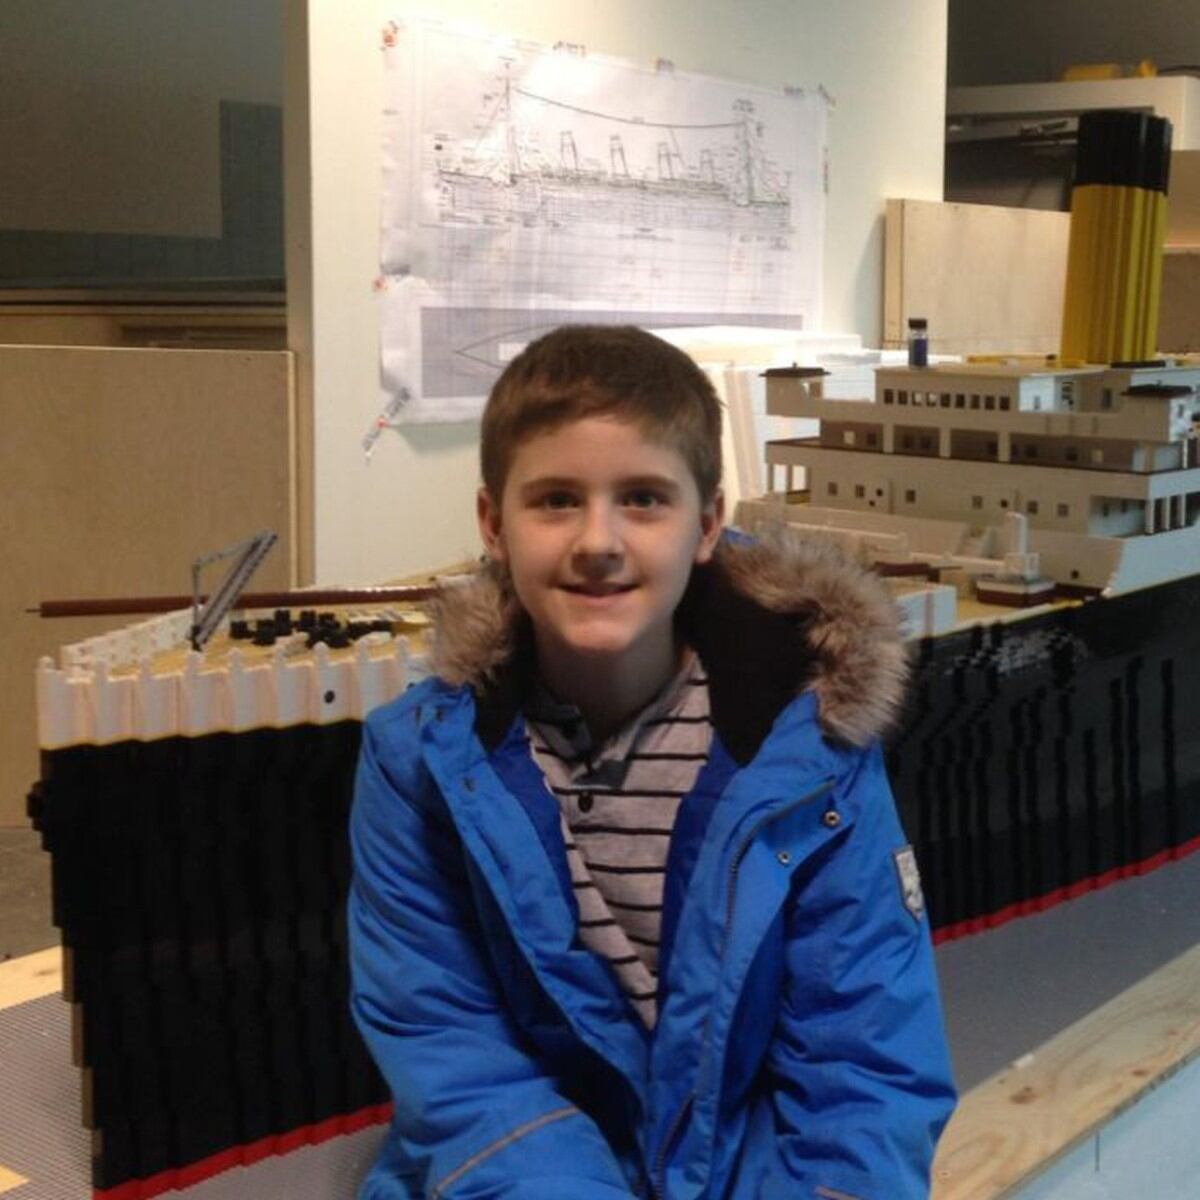 Así construyó un niño de 10 años el Titanic de LEGO más grande del mundo